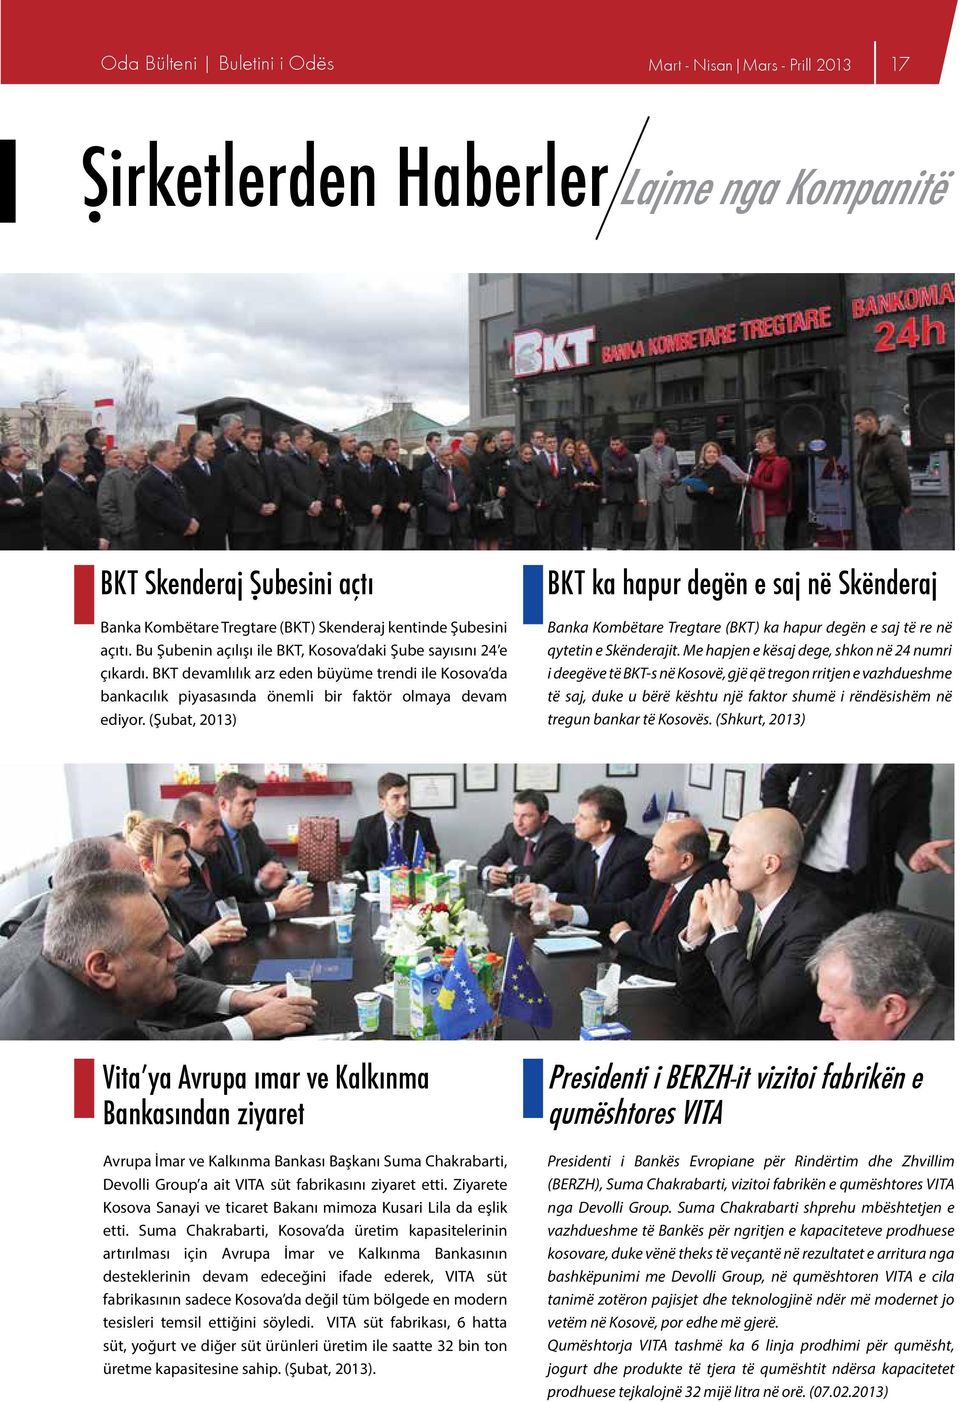 (Şubat, 2013) BKT ka hapur degën e saj në Skënderaj Banka Kombëtare Tregtare (BKT) ka hapur degën e saj të re në qytetin e Skënderajit.